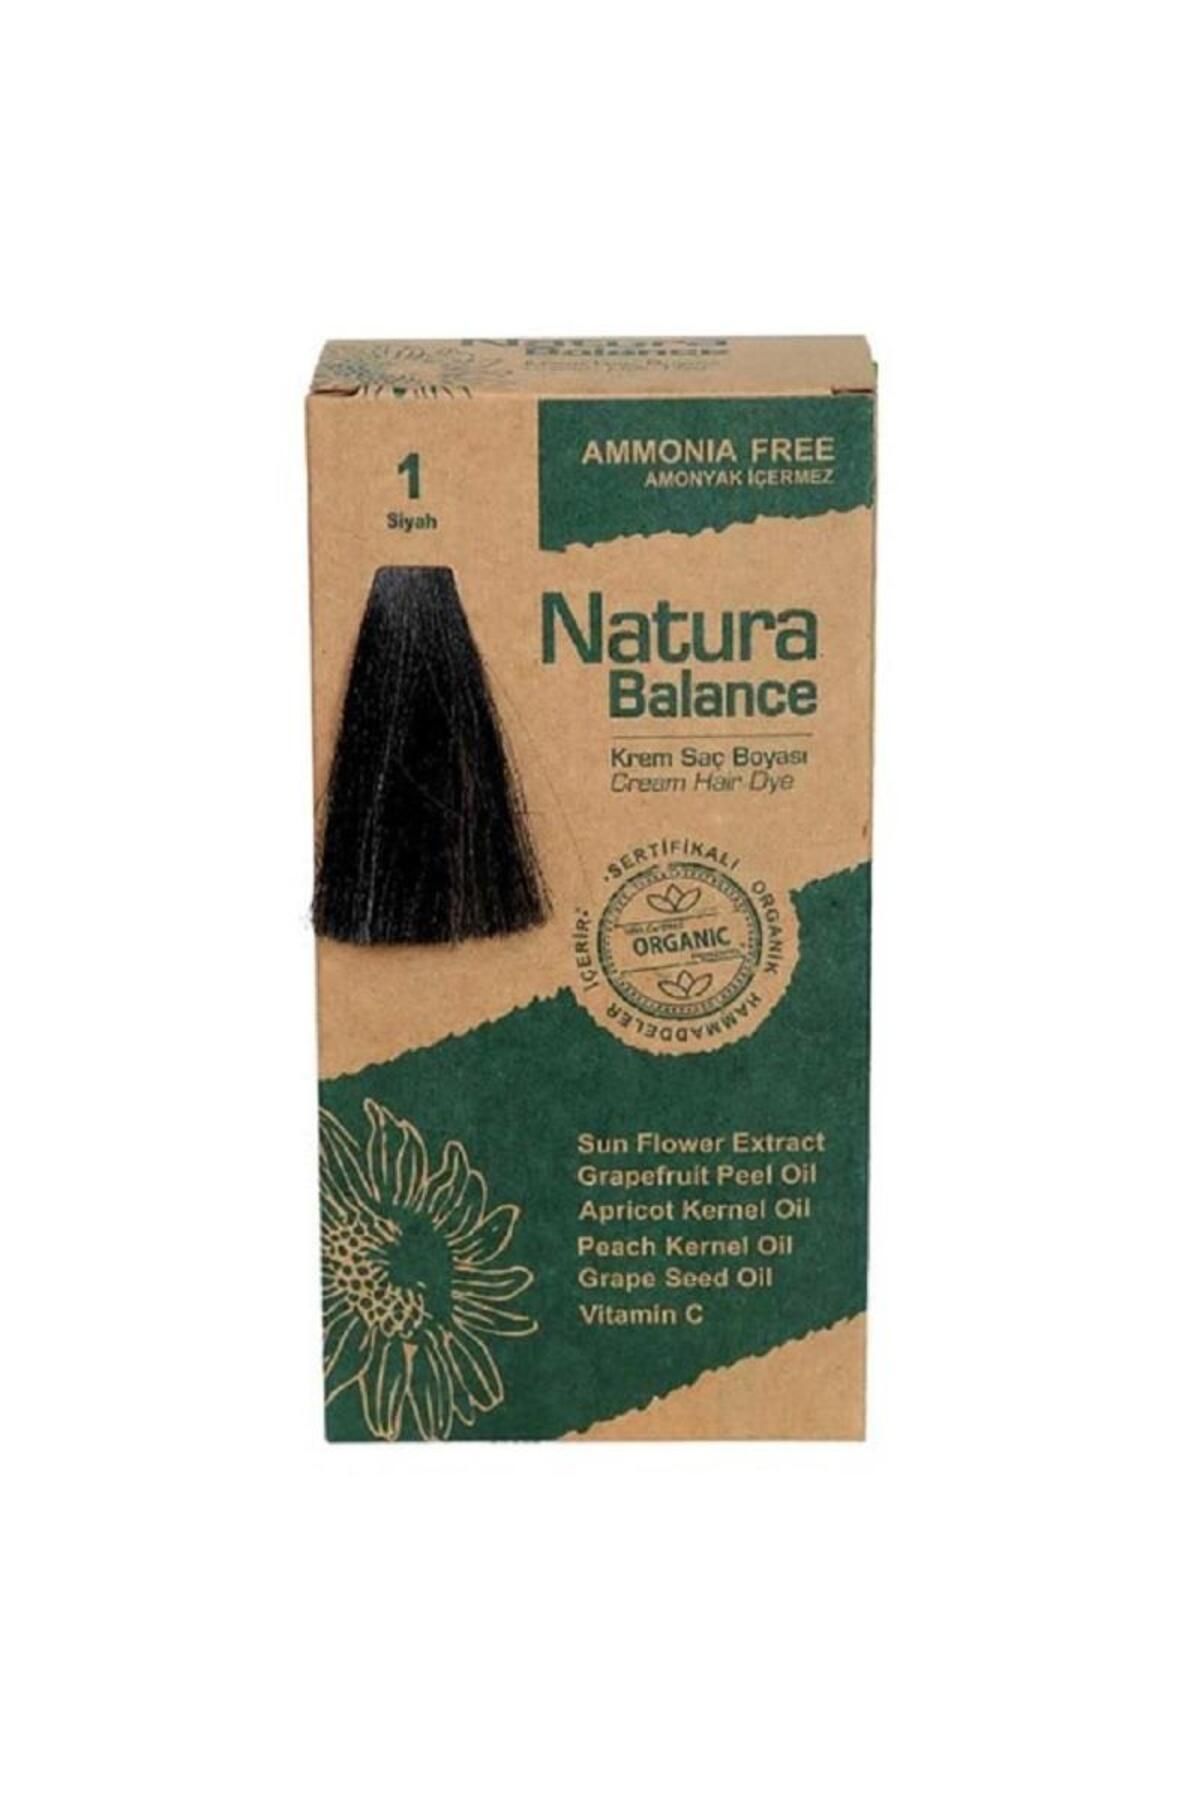 NATURABALANCE Natura Balance Organik Krem Saç Boyası 60 ml - 1 Siyah